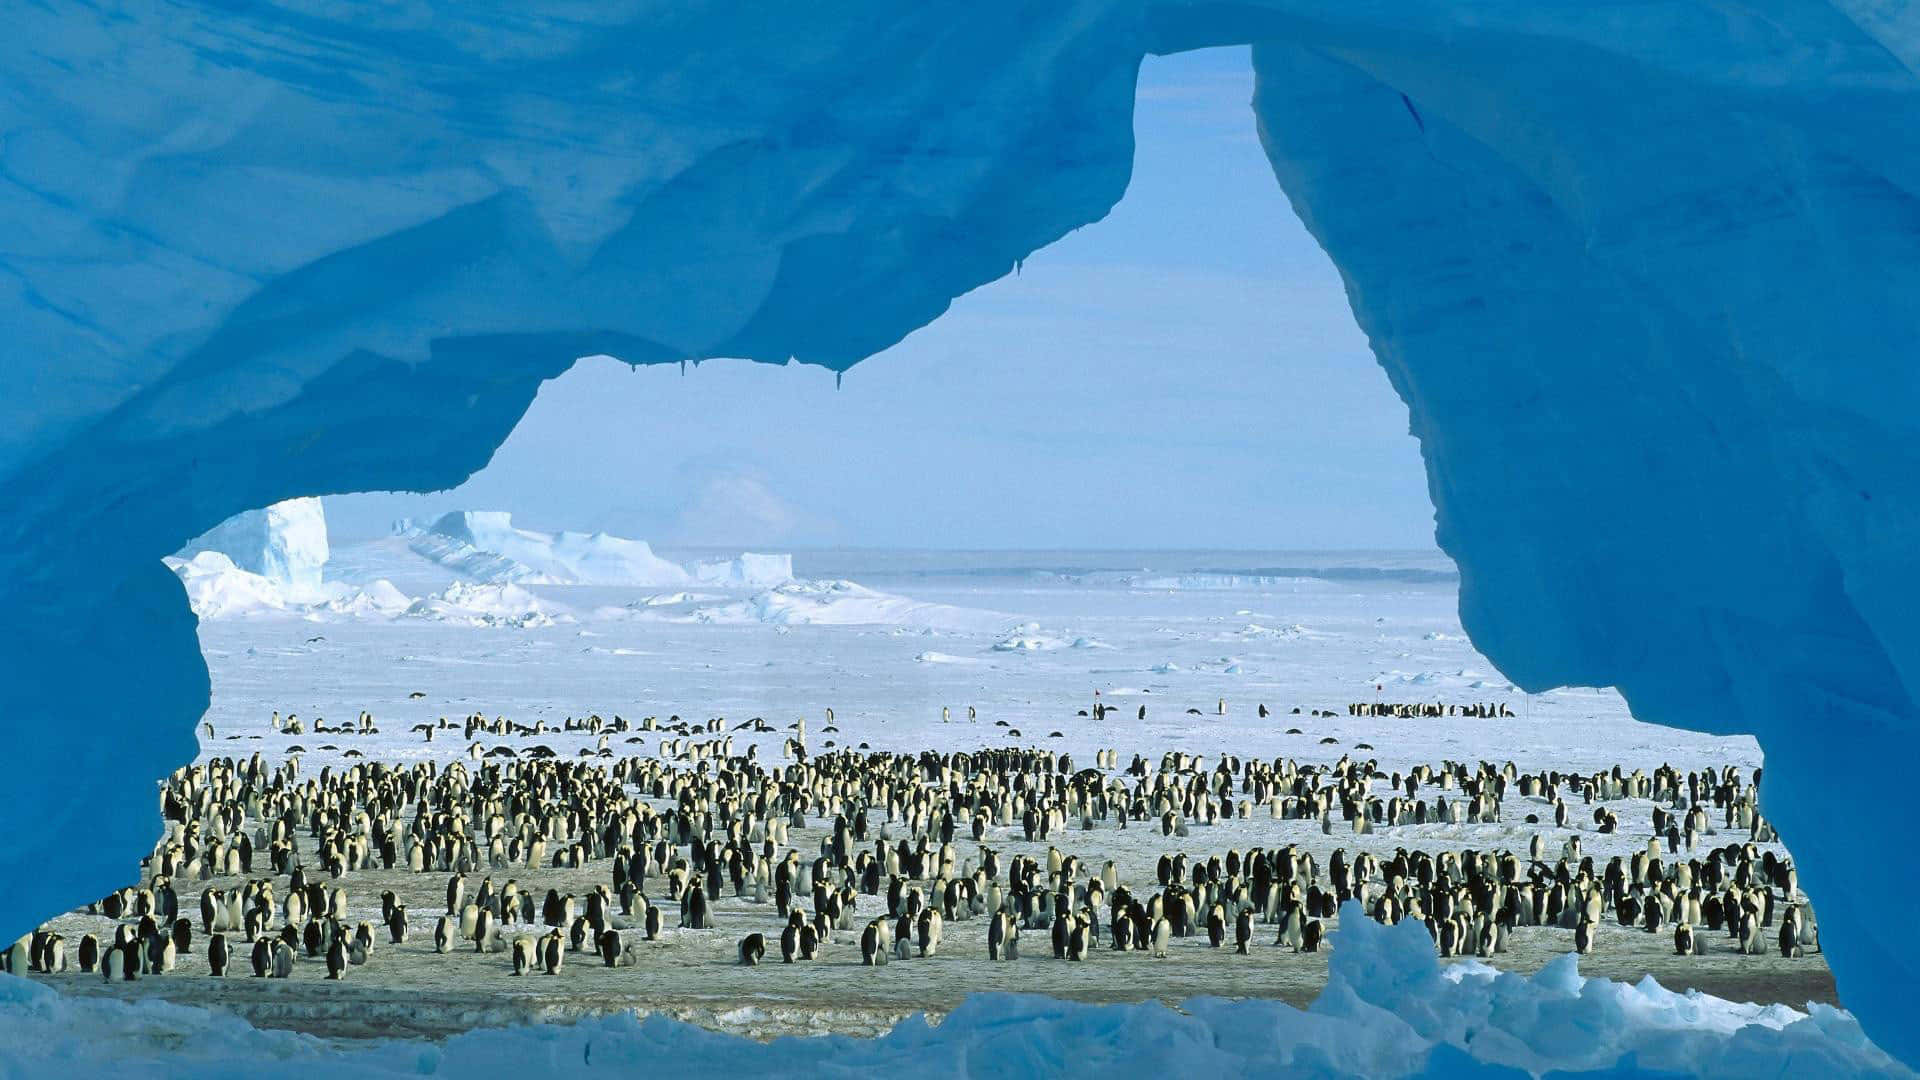 Adéntrateen Un Mundo De Hielo Y Soledad, En El Polo Sur De La Antártida.